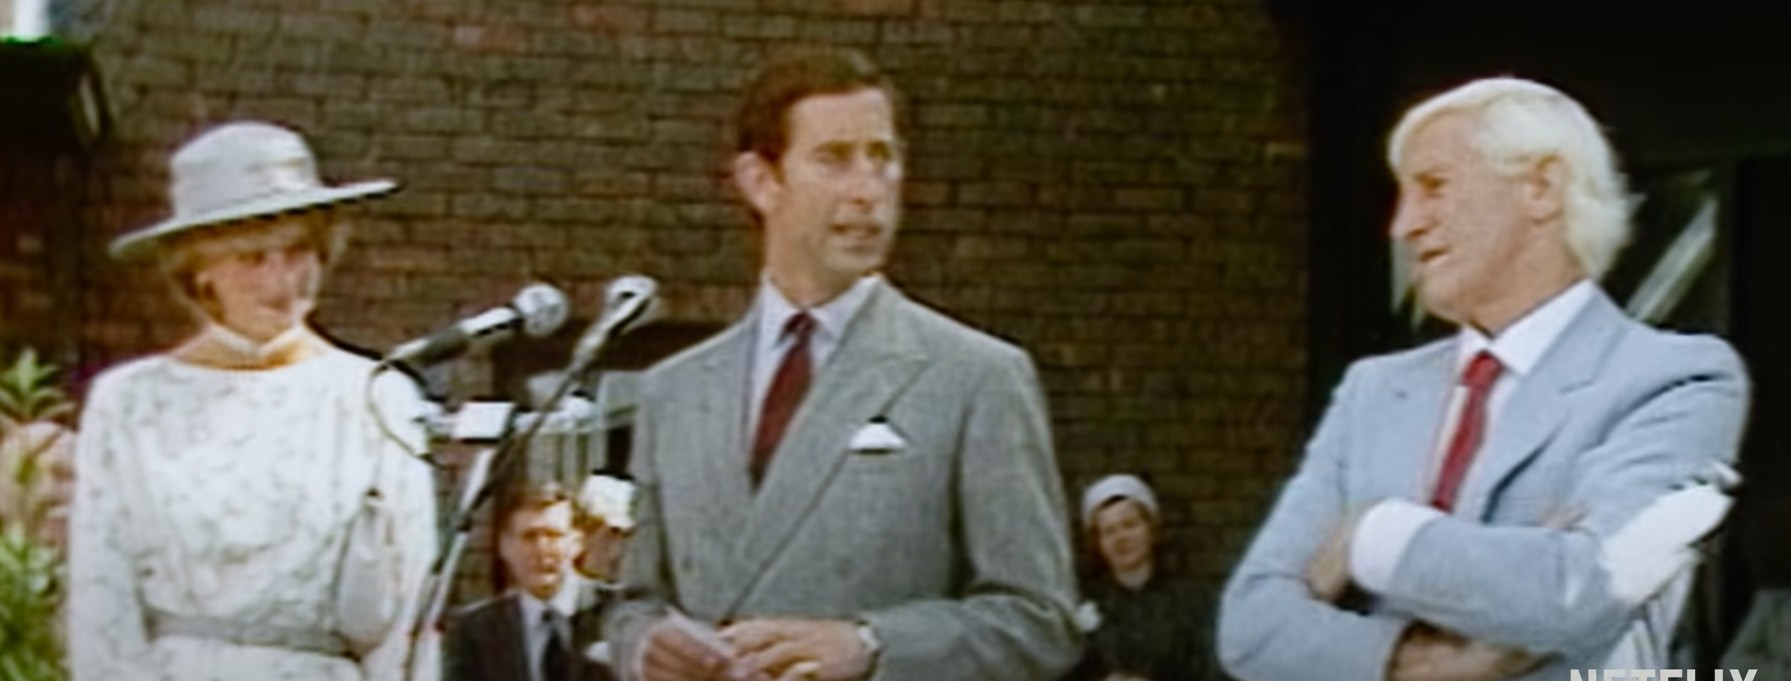 Cena do documentário Jimmy Savile: A British Horror Story mostra a princesa Diana e o príncipe Charles ao lado de Jimmy Savile (Foto: Reprodução)